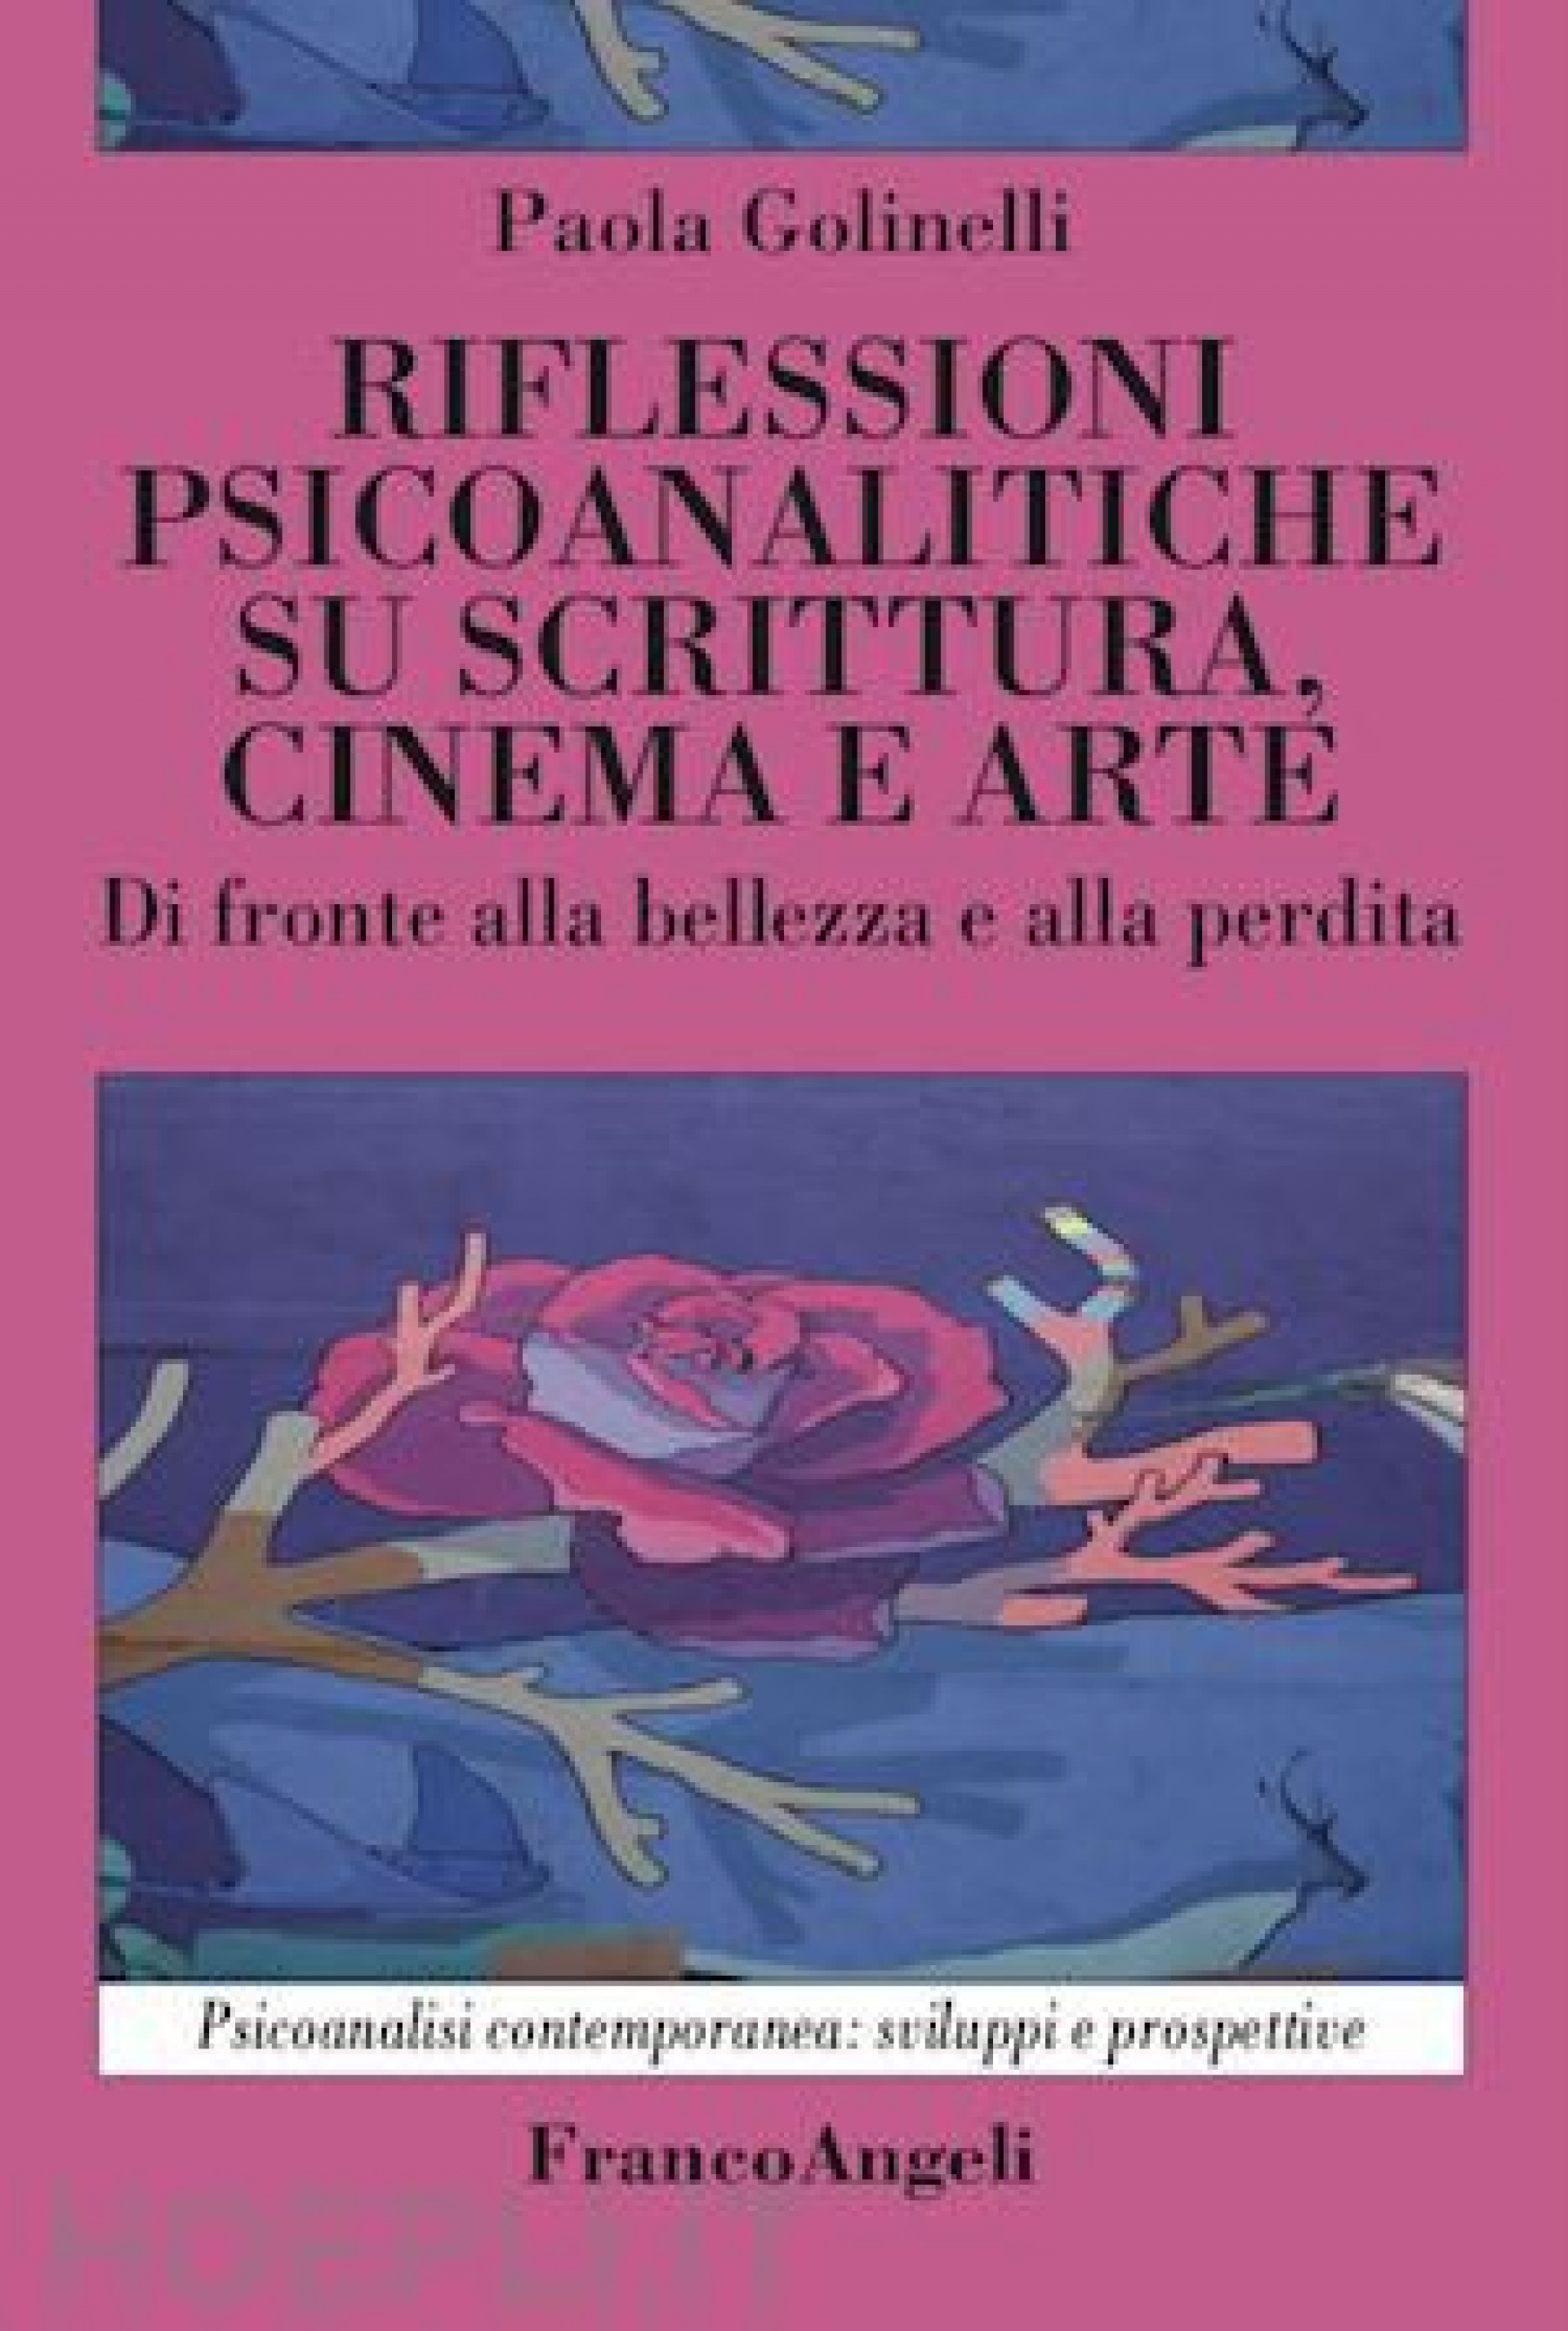 Riflessioni psicoanalitiche su scrittura, cinema e arte. Di fronte alla bellezza e alla perdita – di Paola Golinelli.  Recensione di Leonardo Spanò.